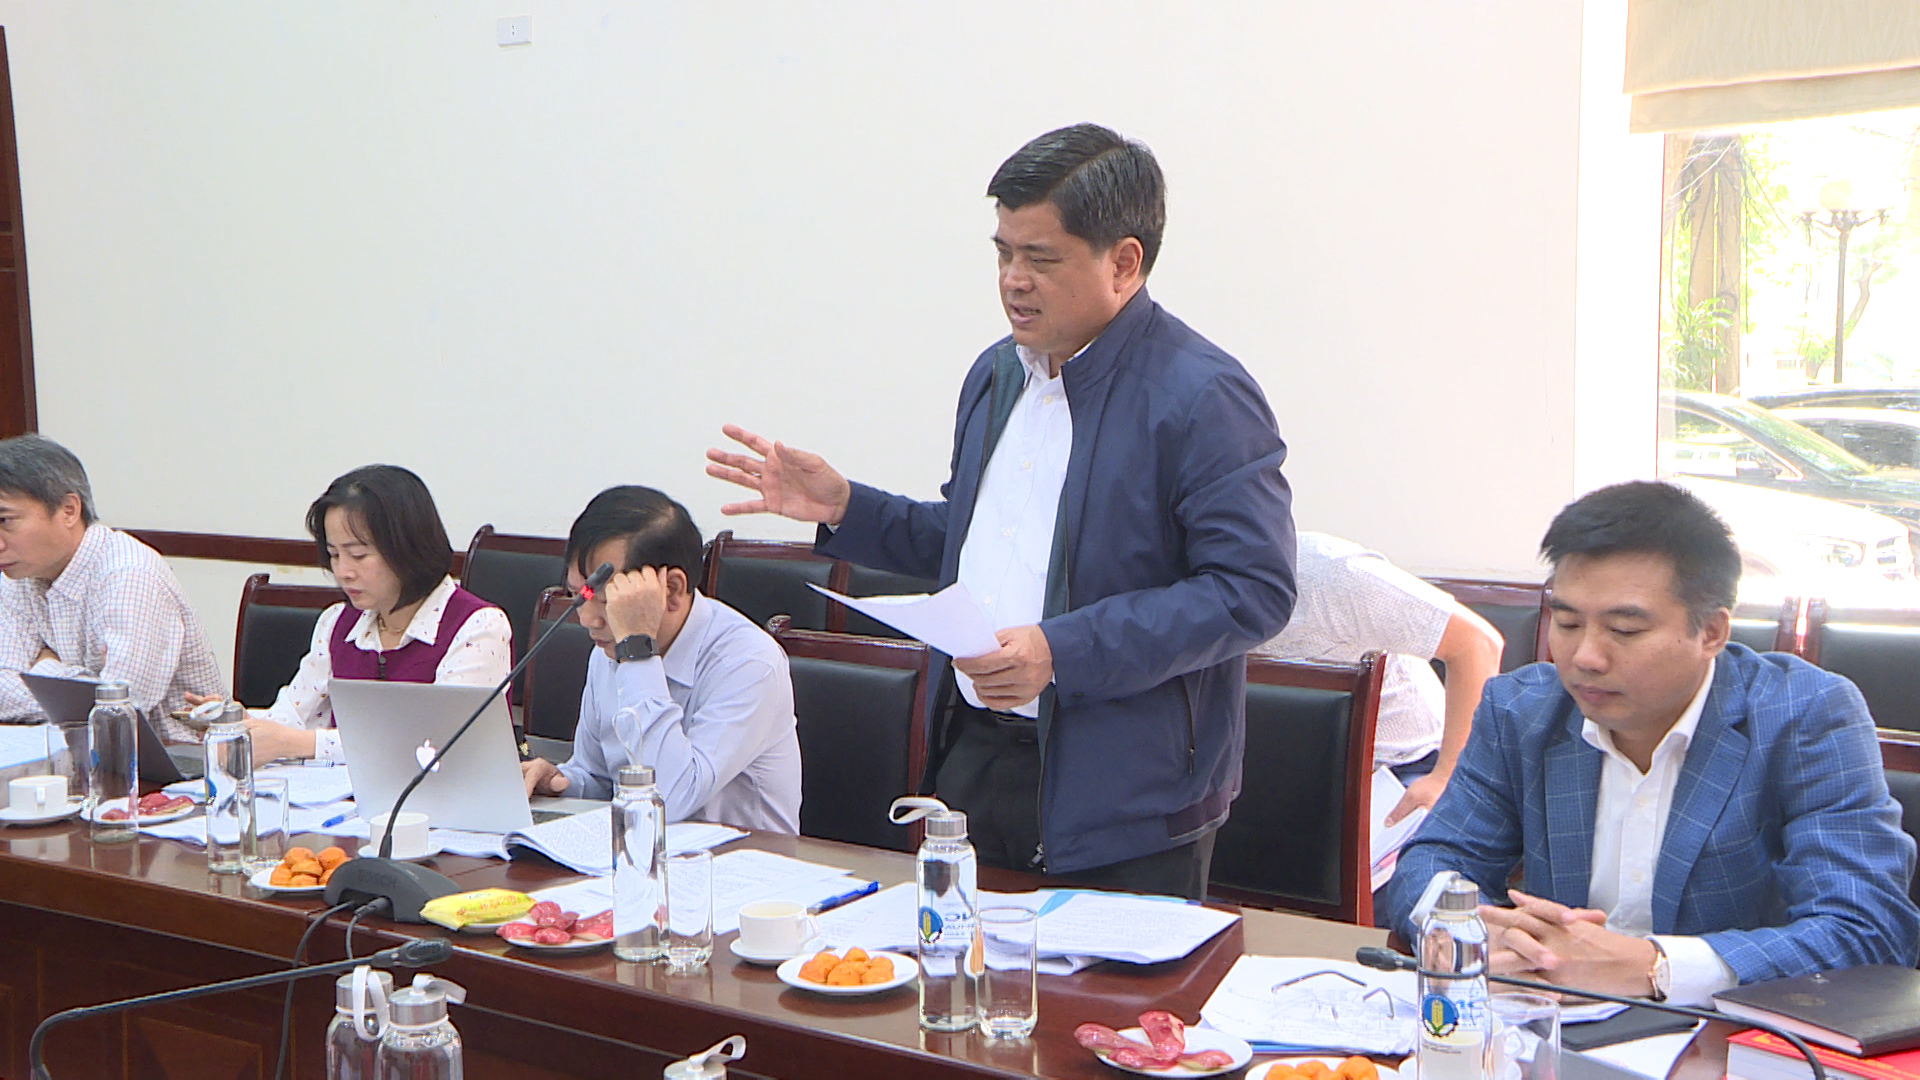 Đồng chí Trần Thanh Nam, Thứ trưởng Bộ NN&PTNT, Chủ tịch Hội đồng thẩm định kết luận cuộc họp.